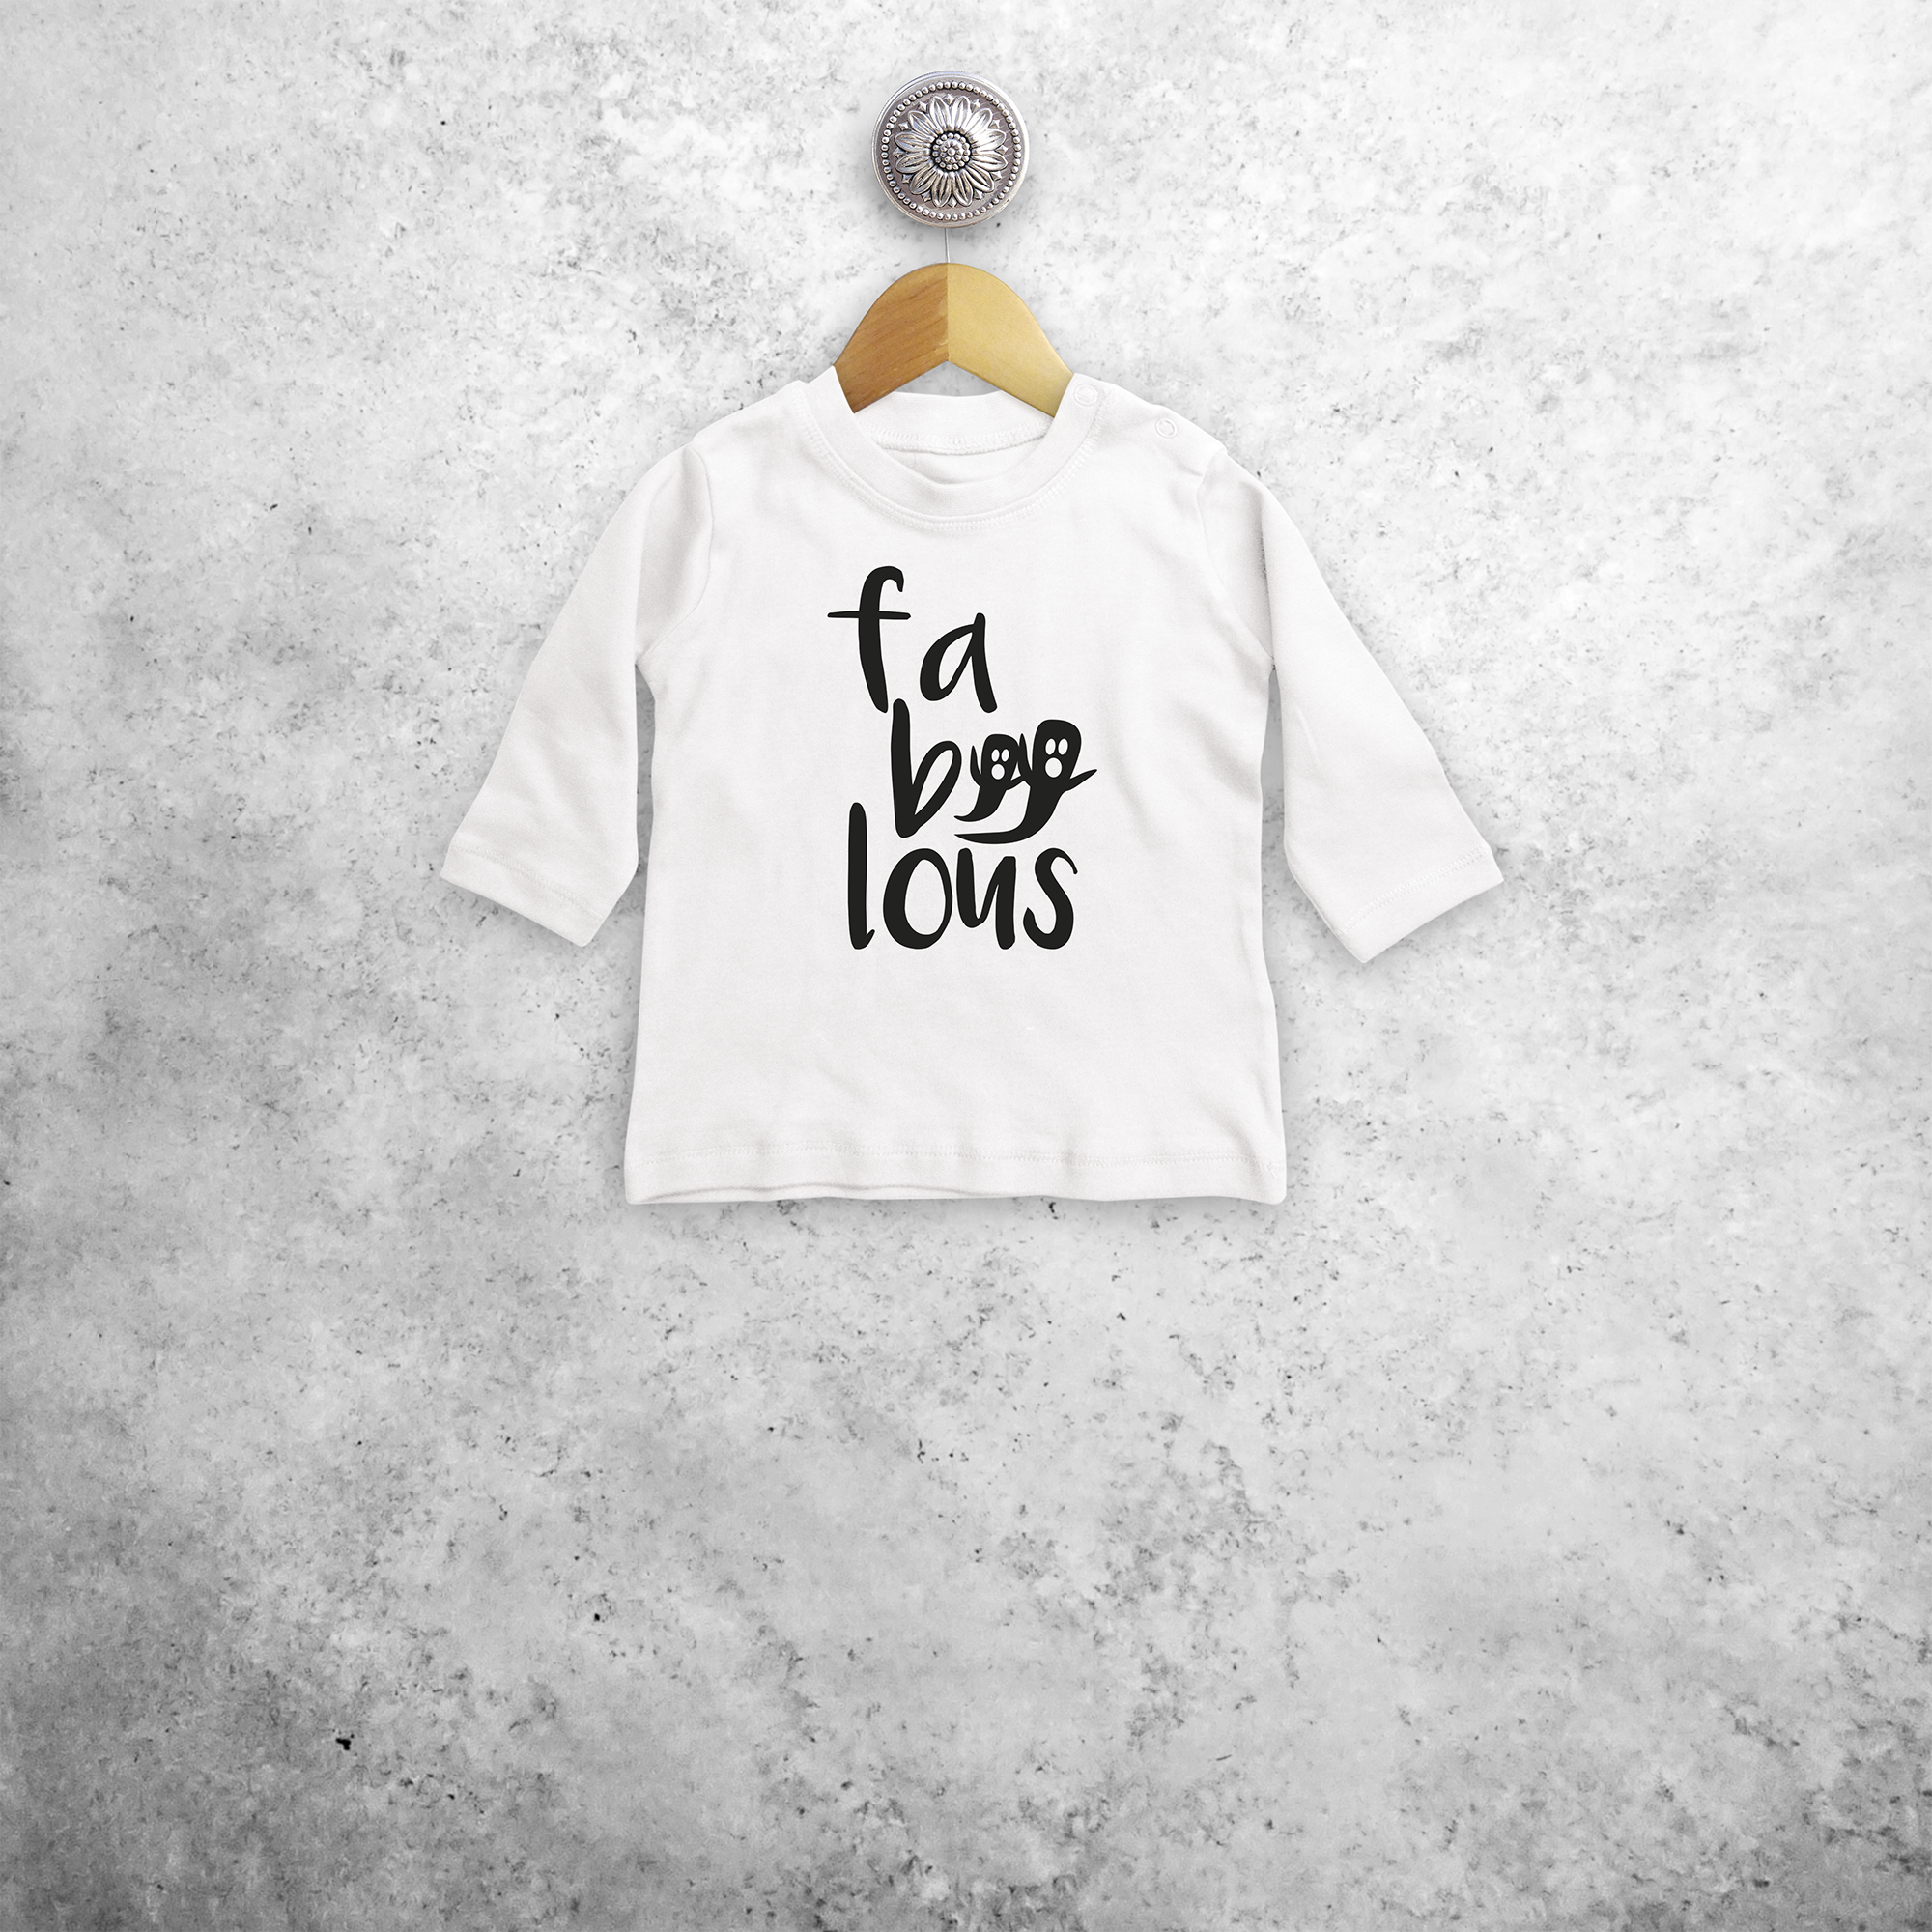 'Fa-boo-lous' baby longsleeve shirt